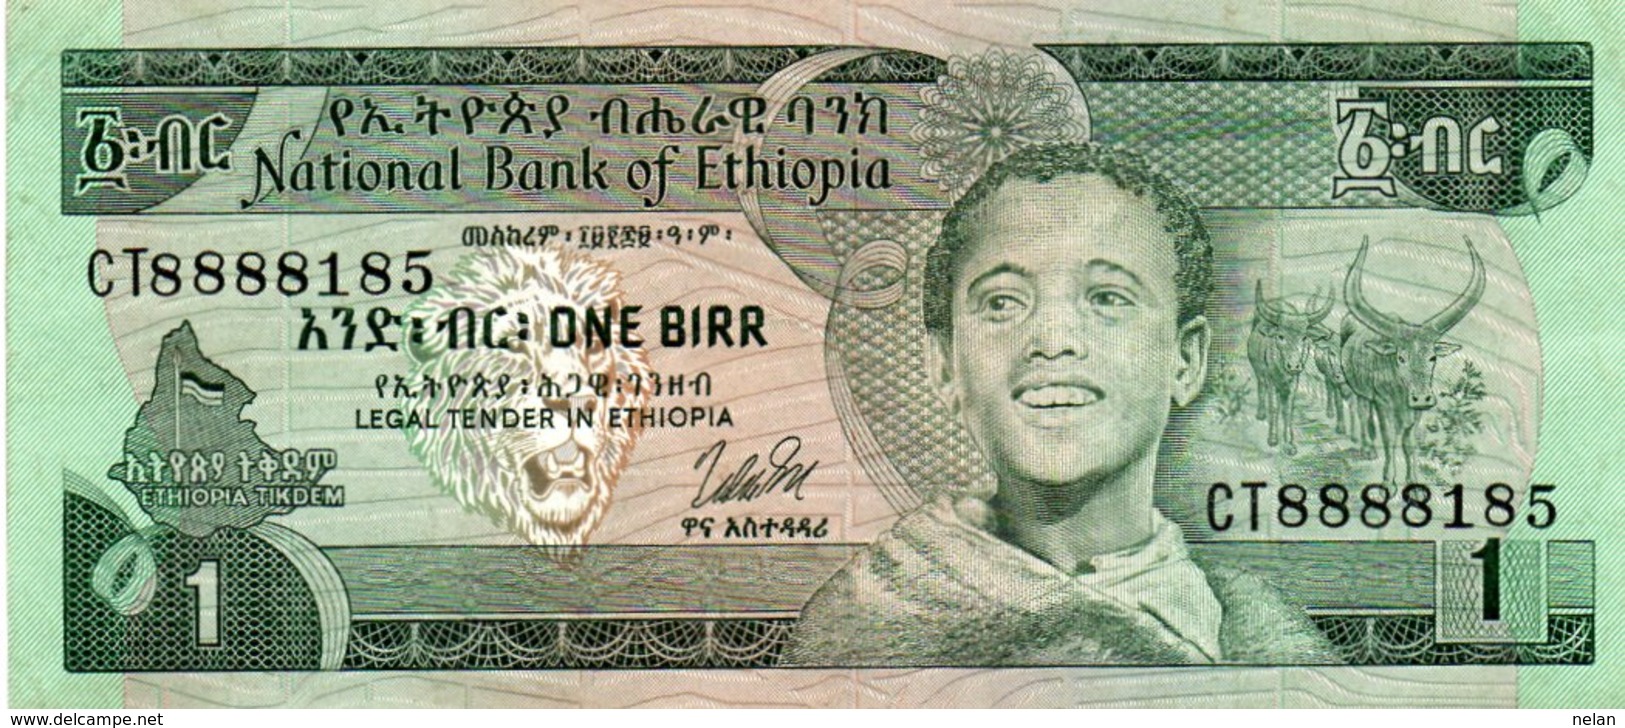 ETHIOPIA 1 BIRR 1976 P-30b XF+AUNC  SERIE CT8888185 - Aethiopien